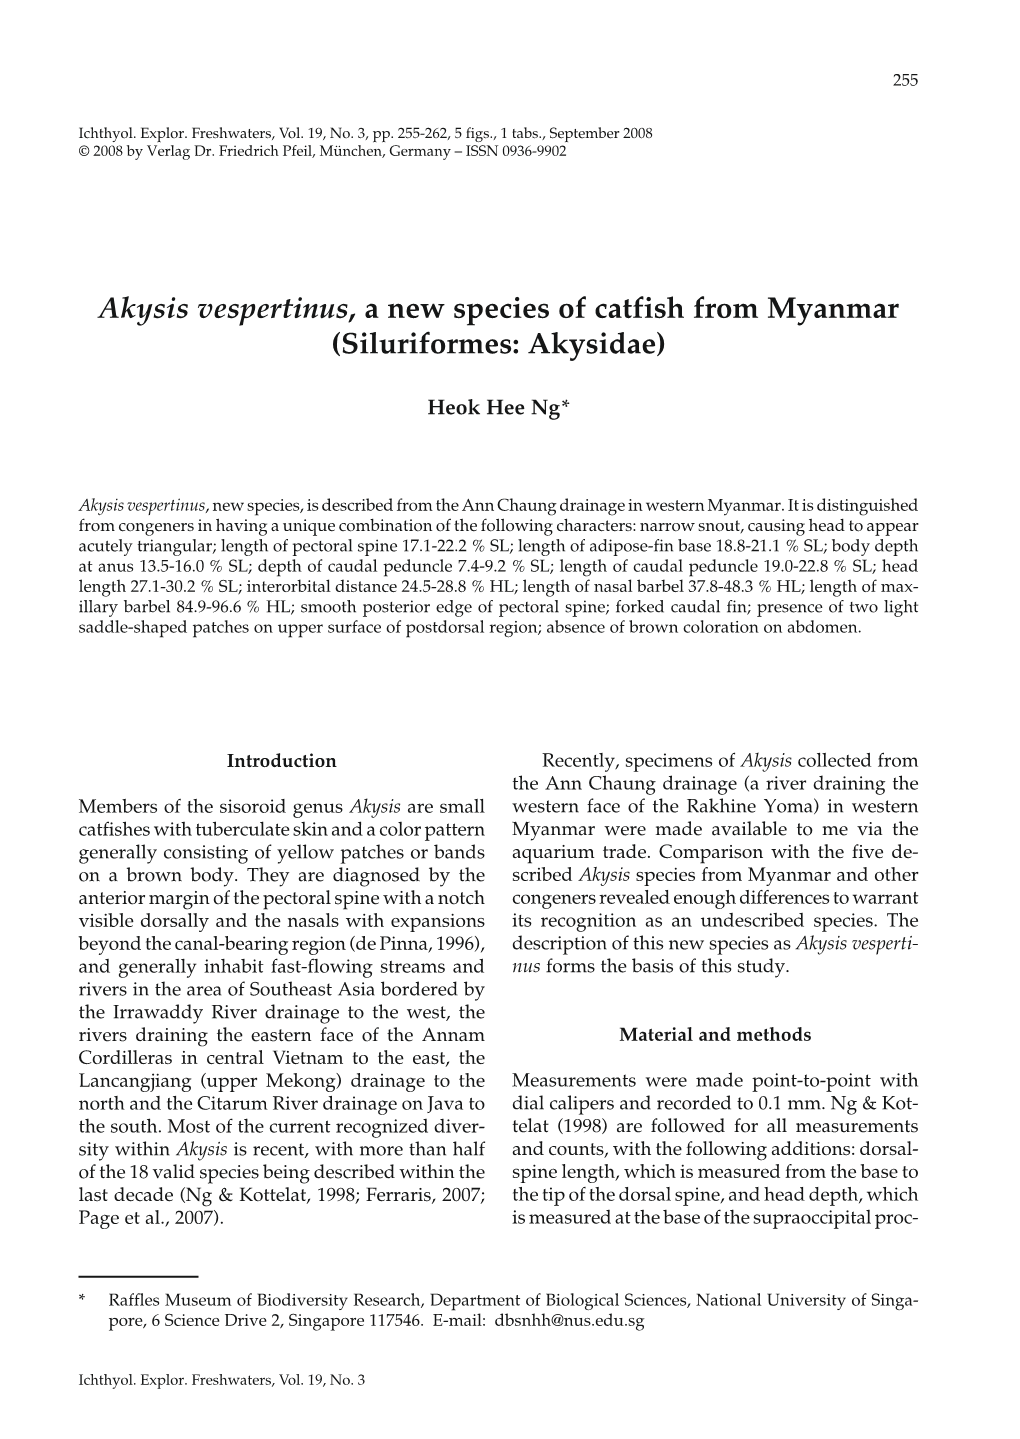 Akysis Vespertinus, a New Species of Catfish from Myanmar (Siluriformes: Akysidae)